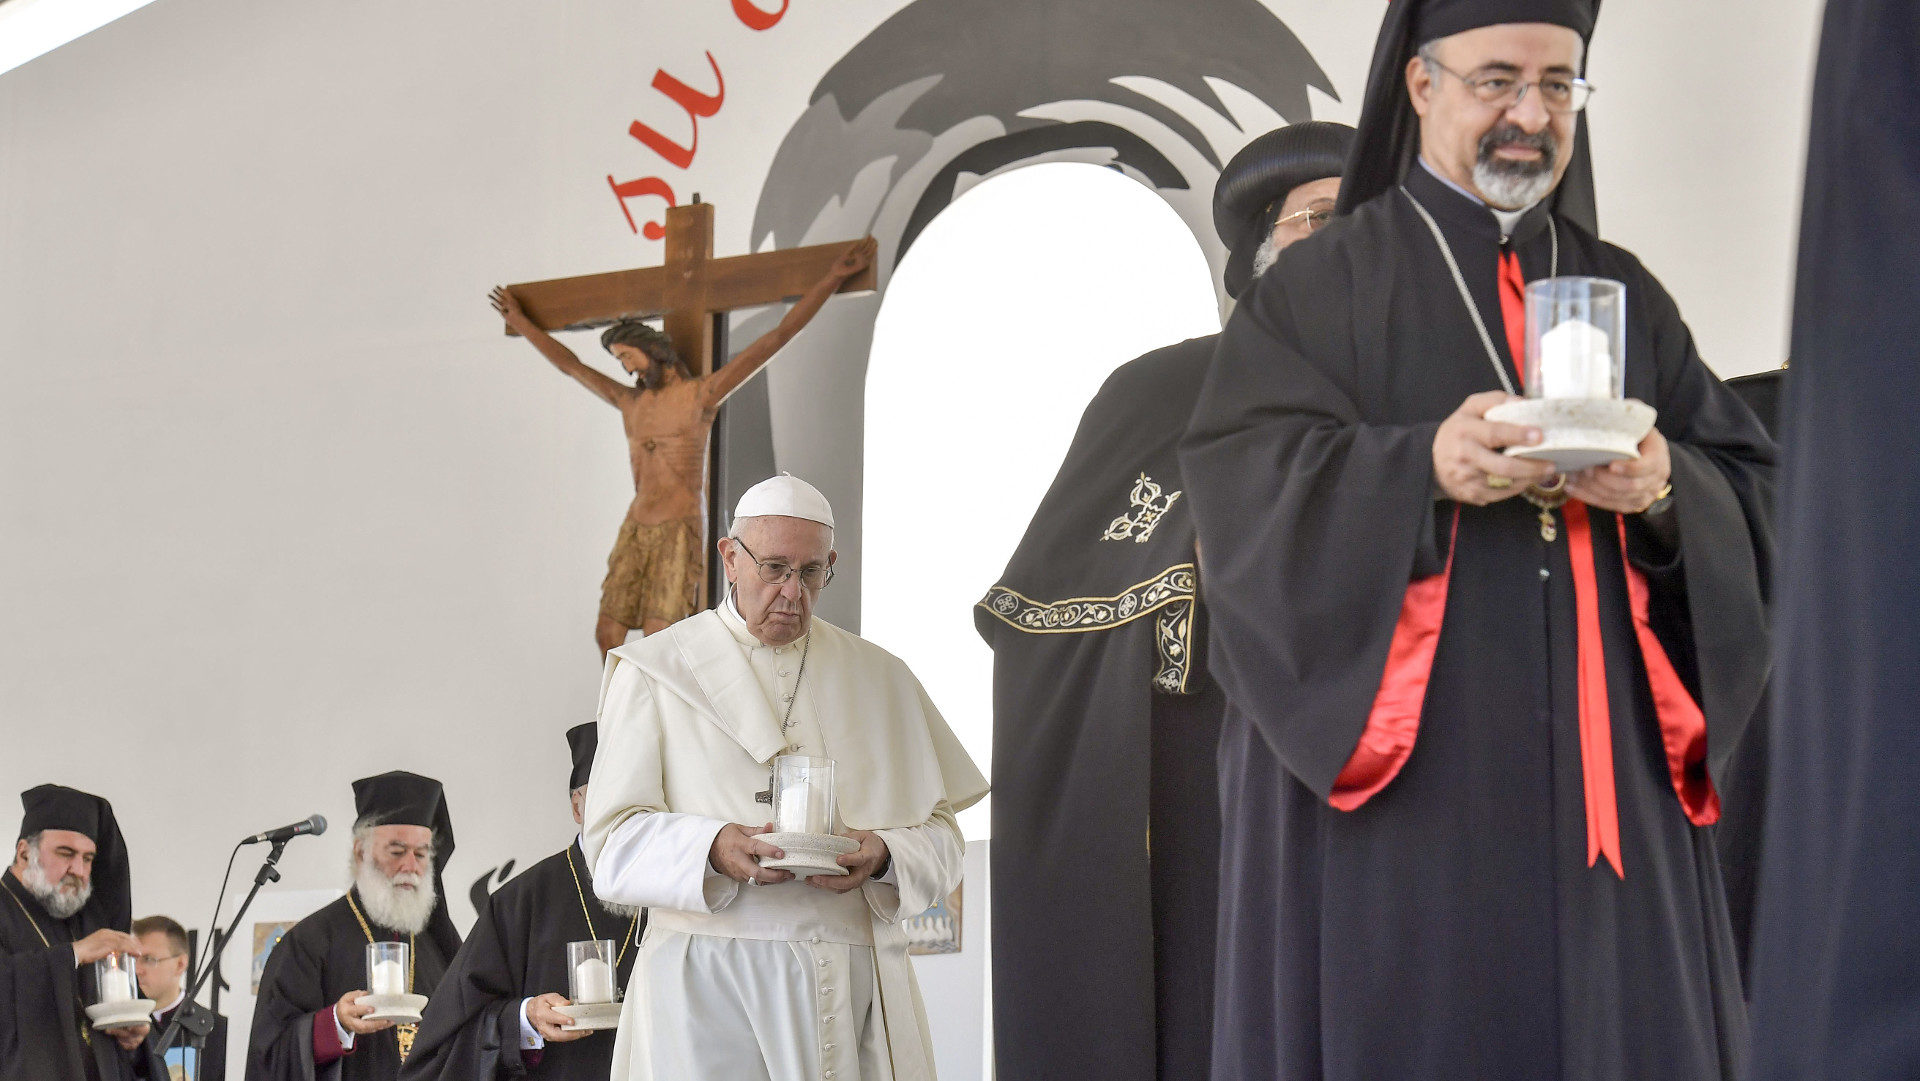 Papst Franziskus und Oberhäupter orientalischer und orthodoxer Kirchen in Bari.